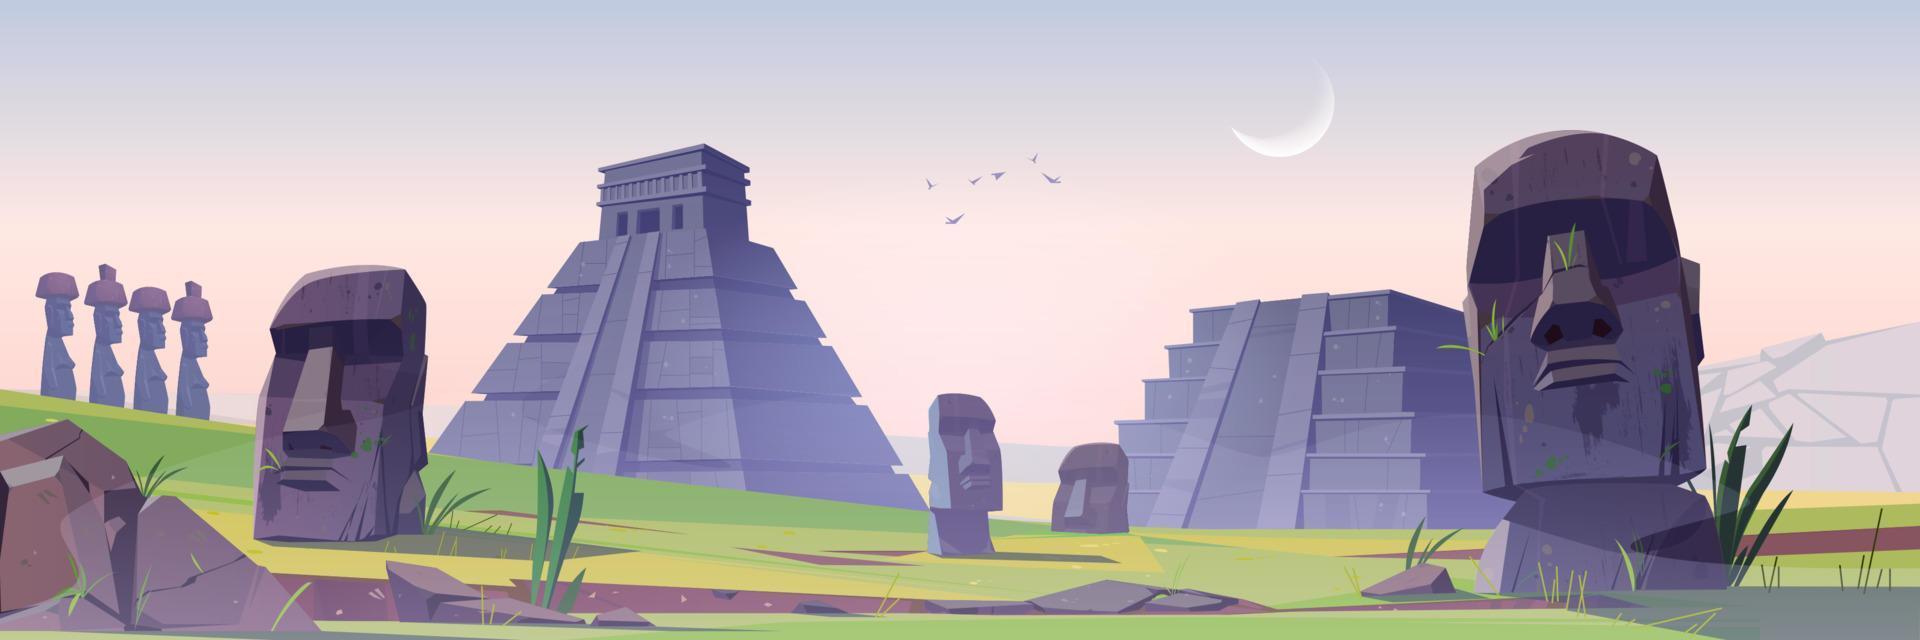 anciennes pyramides mayas et monuments de statues moai vecteur